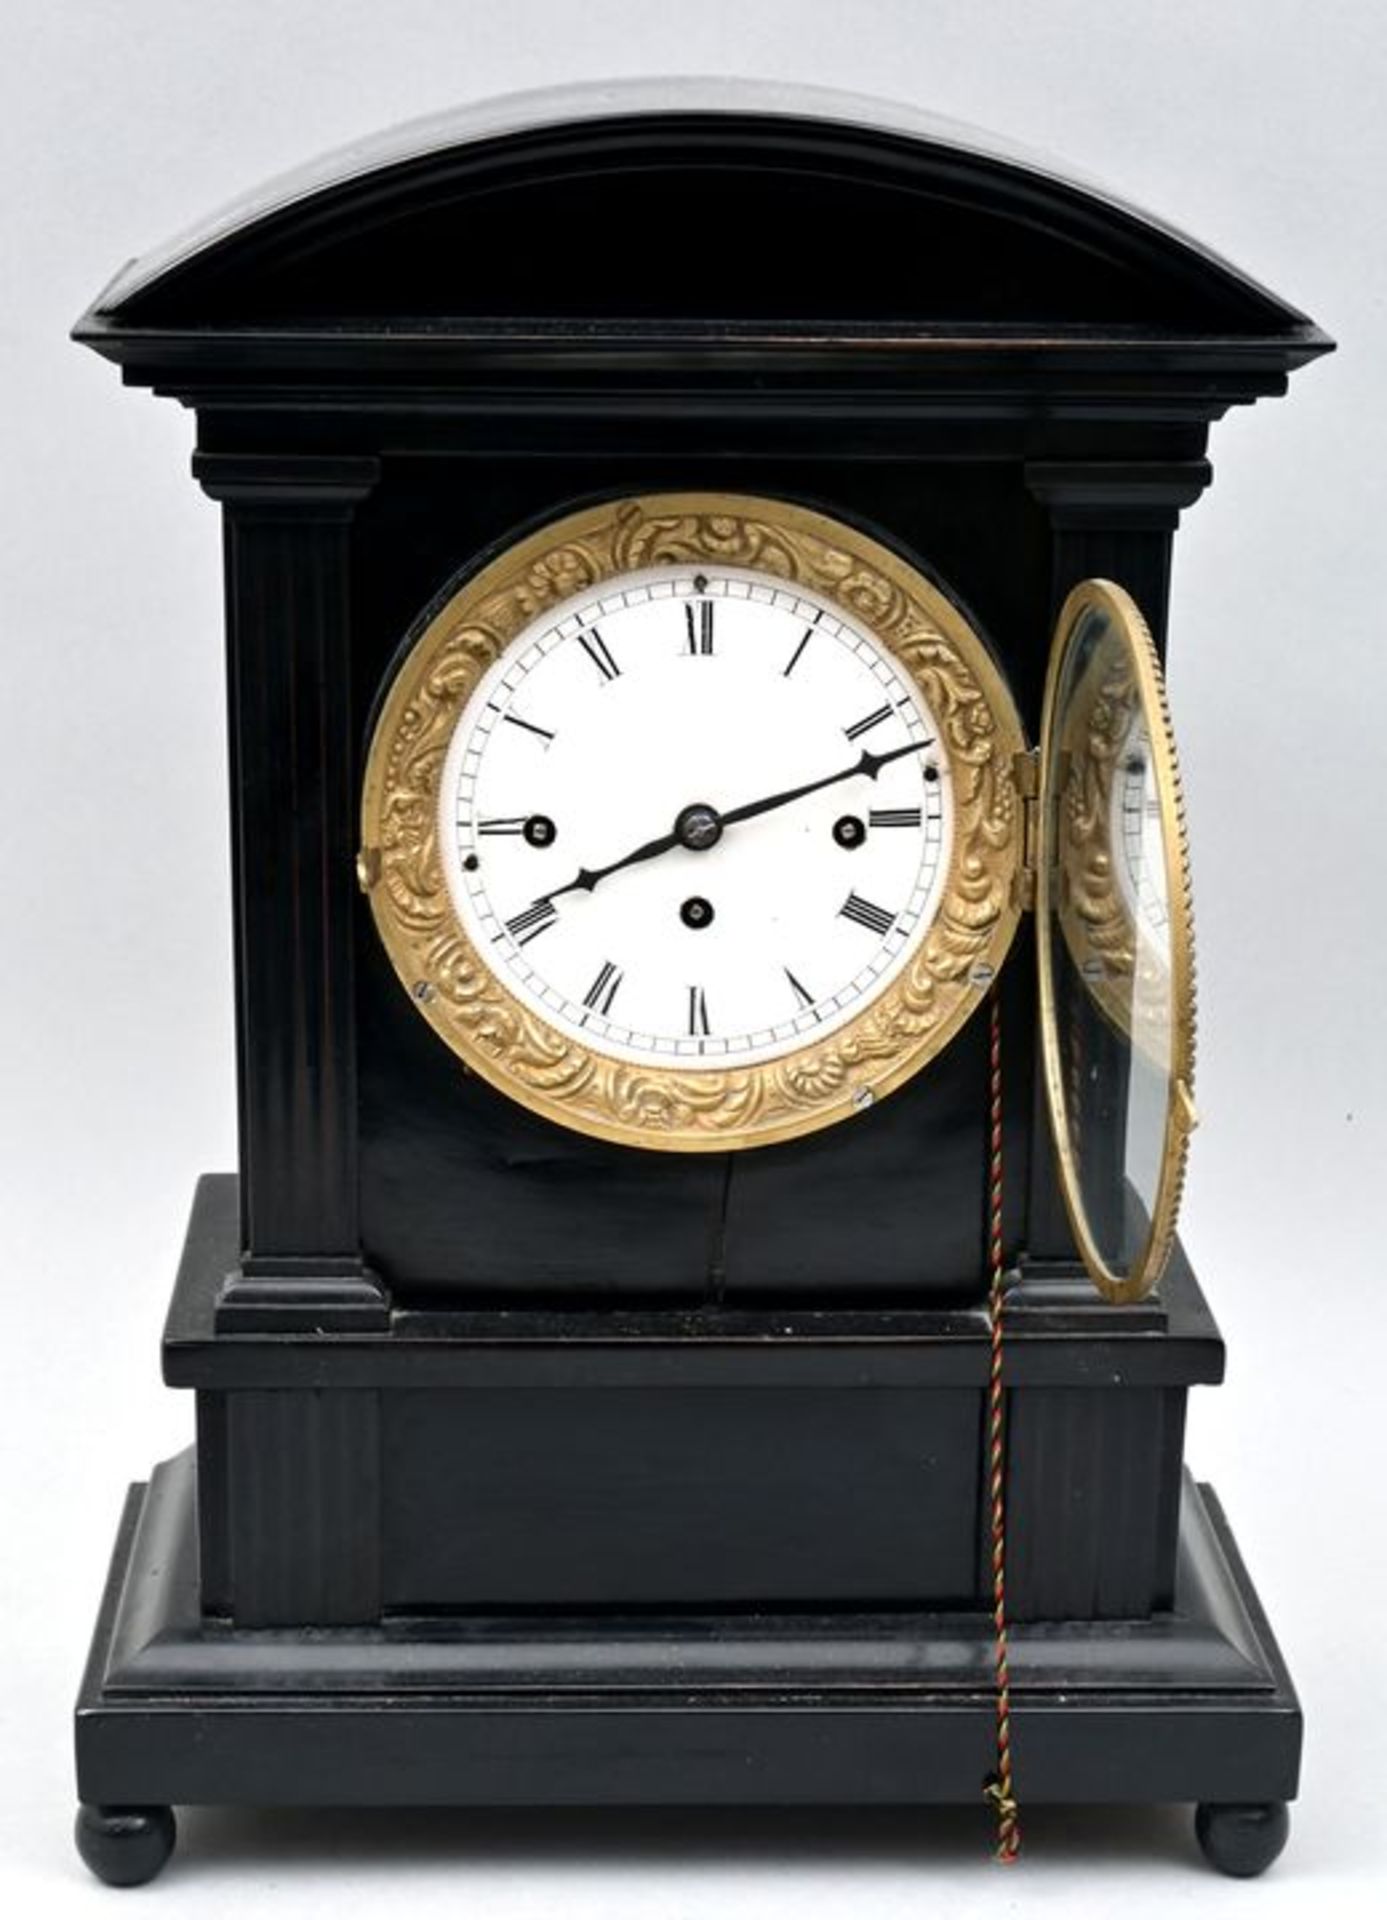 Stockuhr / Bracket clock - Bild 2 aus 7